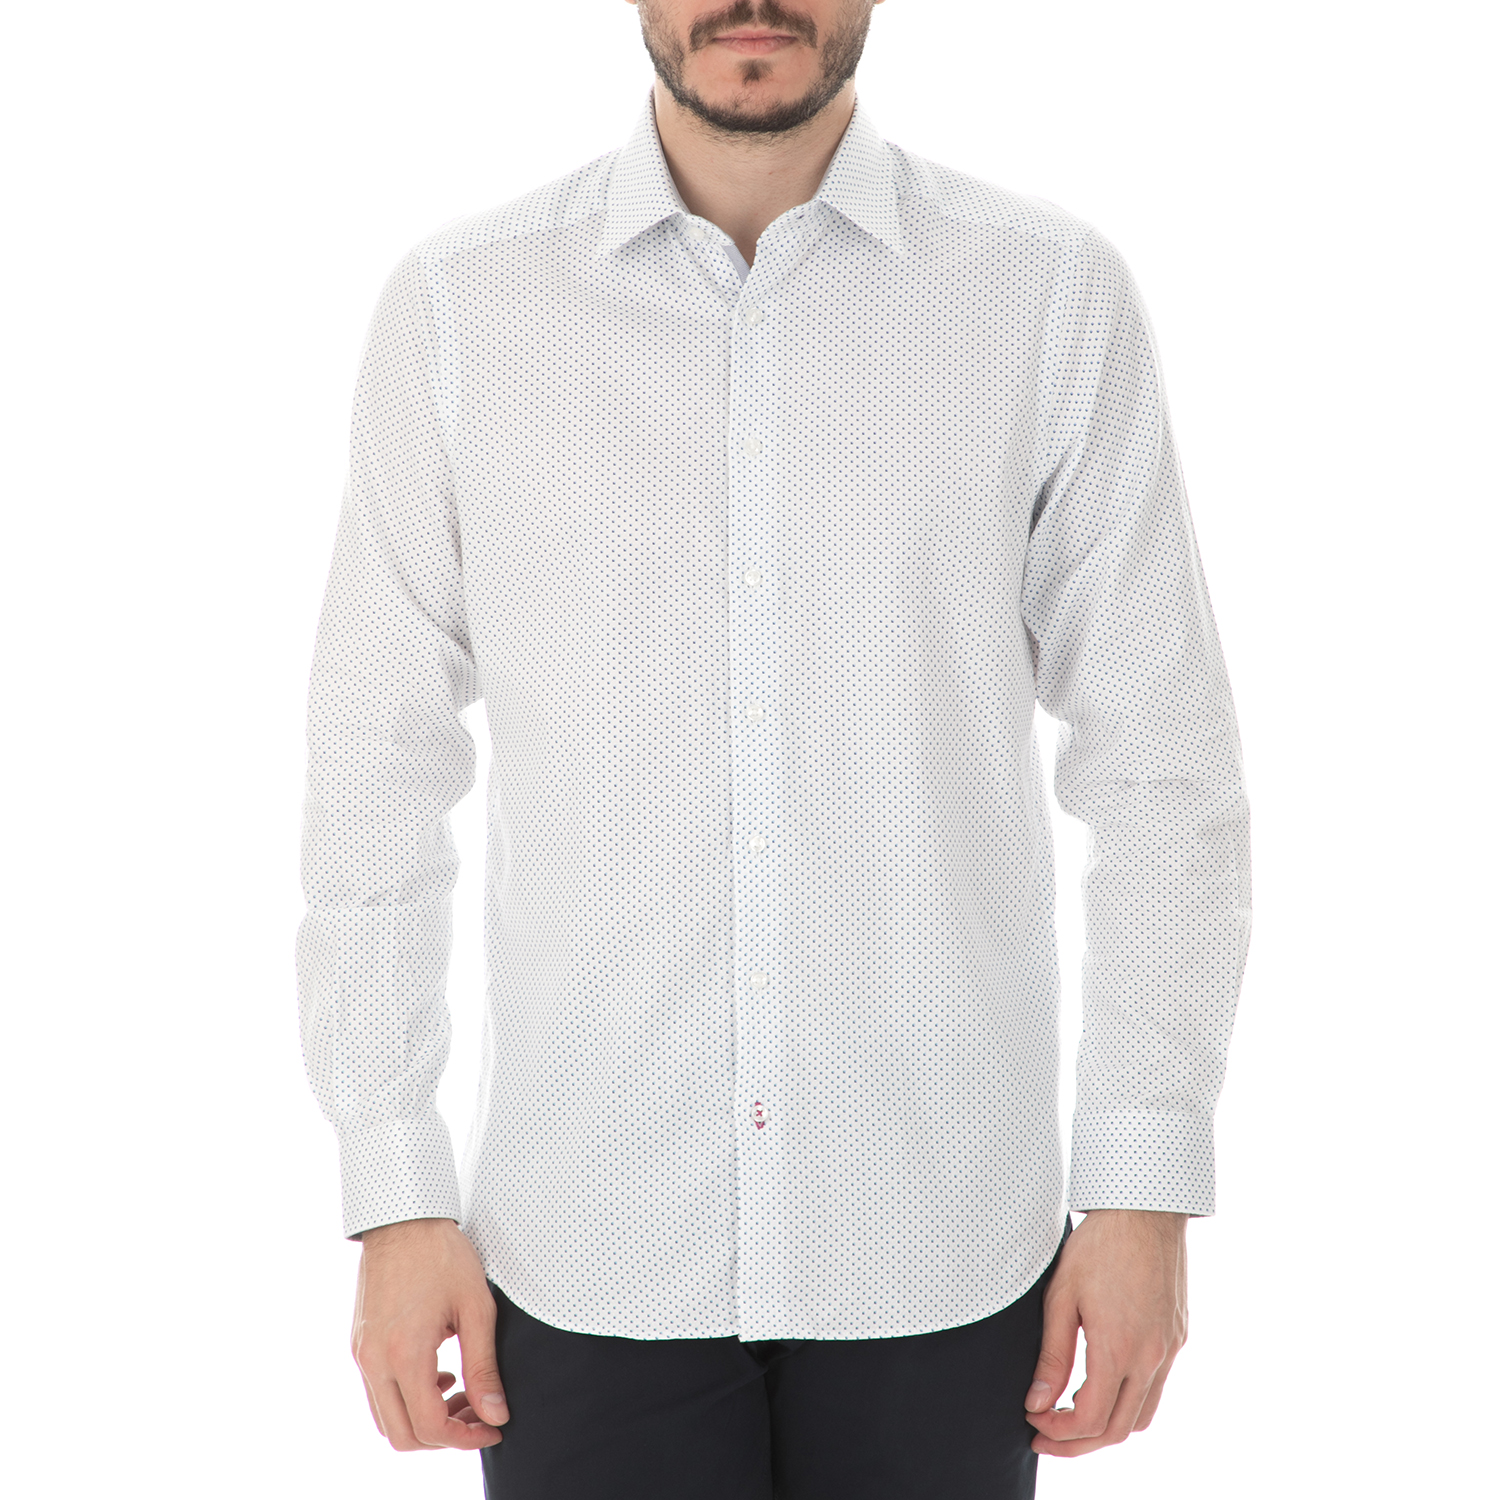 Ανδρικά/Ρούχα/Πουκάμισα/Μακρυμάνικα HAMPTONS - Ανδρικό μακρυμάνικο πουκάμισο HAMPTONS MICRODESIGN λευκό